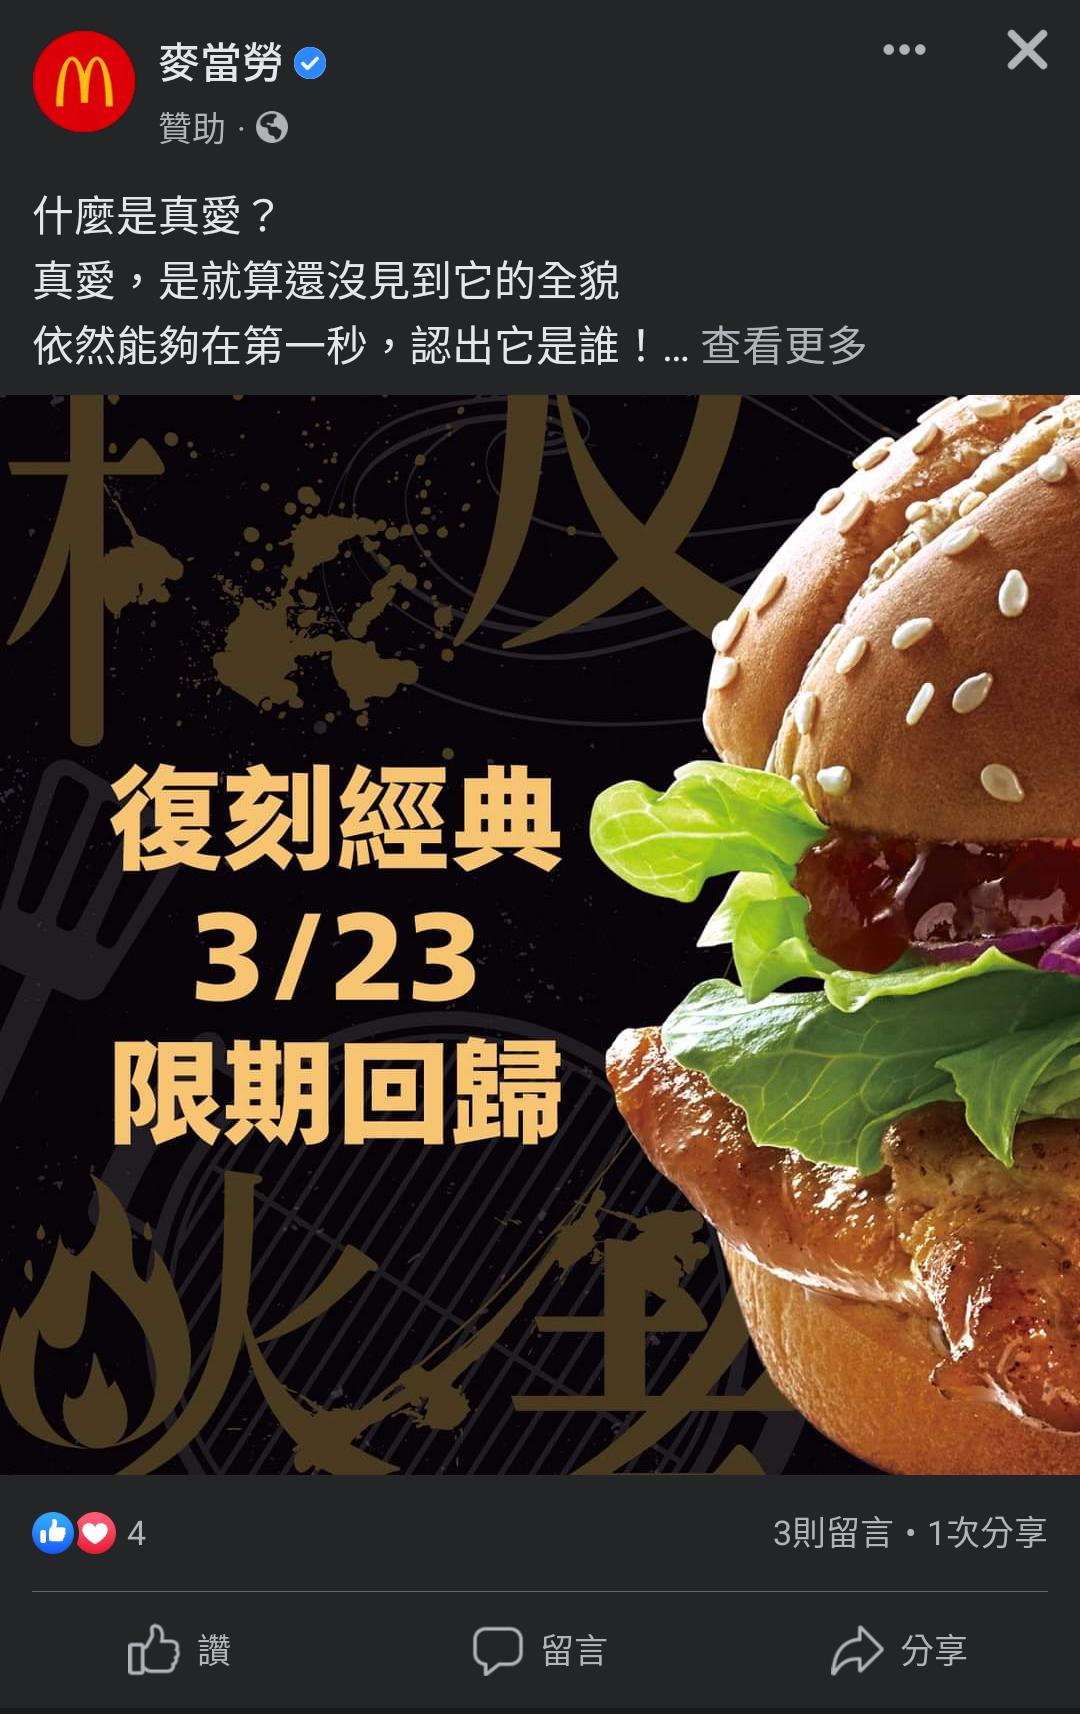 「板烤雞腿堡」也將在 3 月 23 日限期回歸